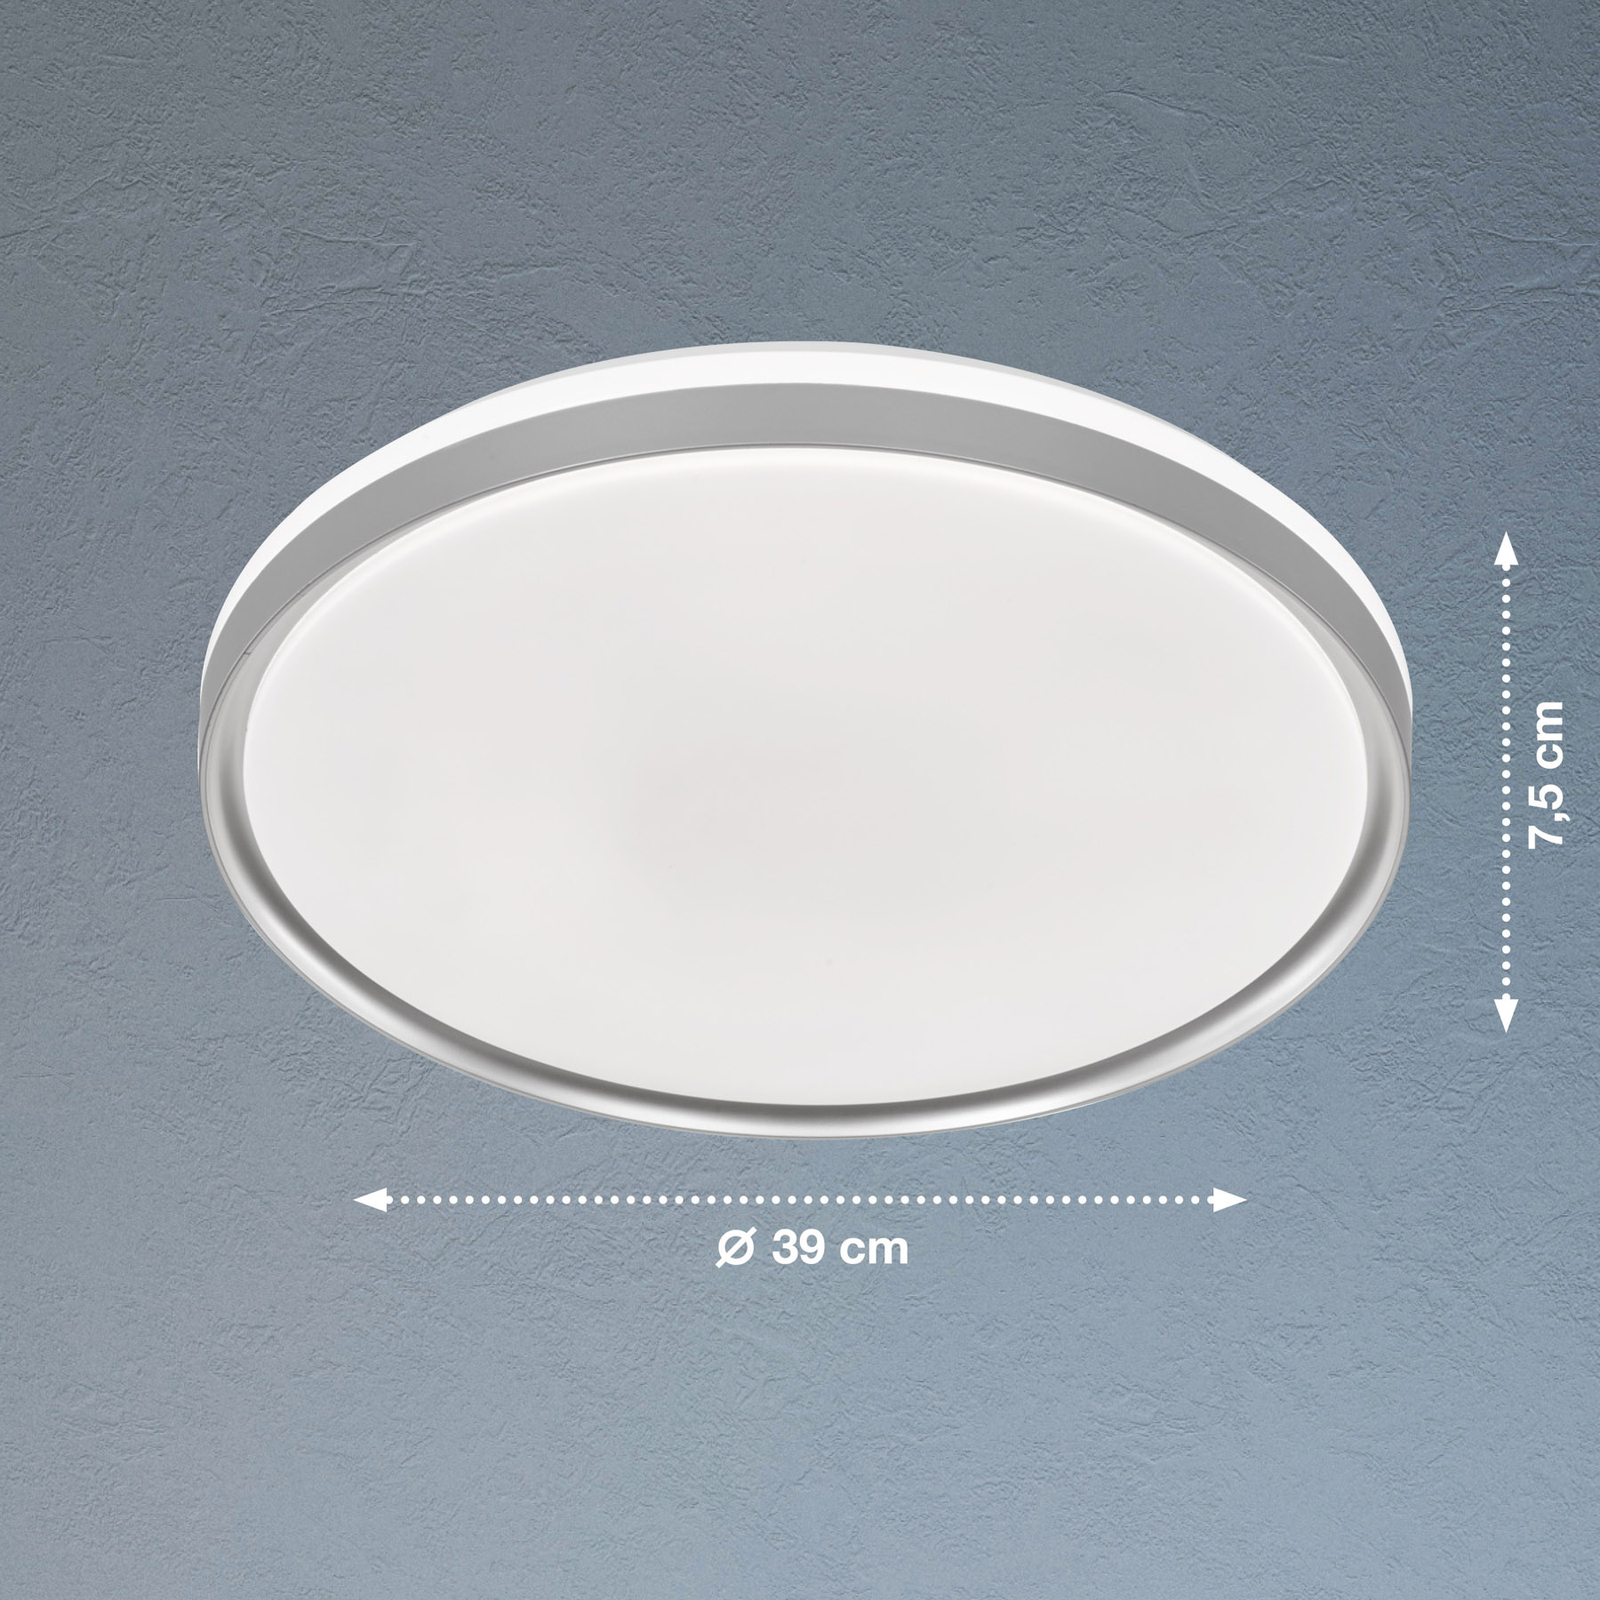 Jaso BS LED ceiling light, Ø 39 cm, silver